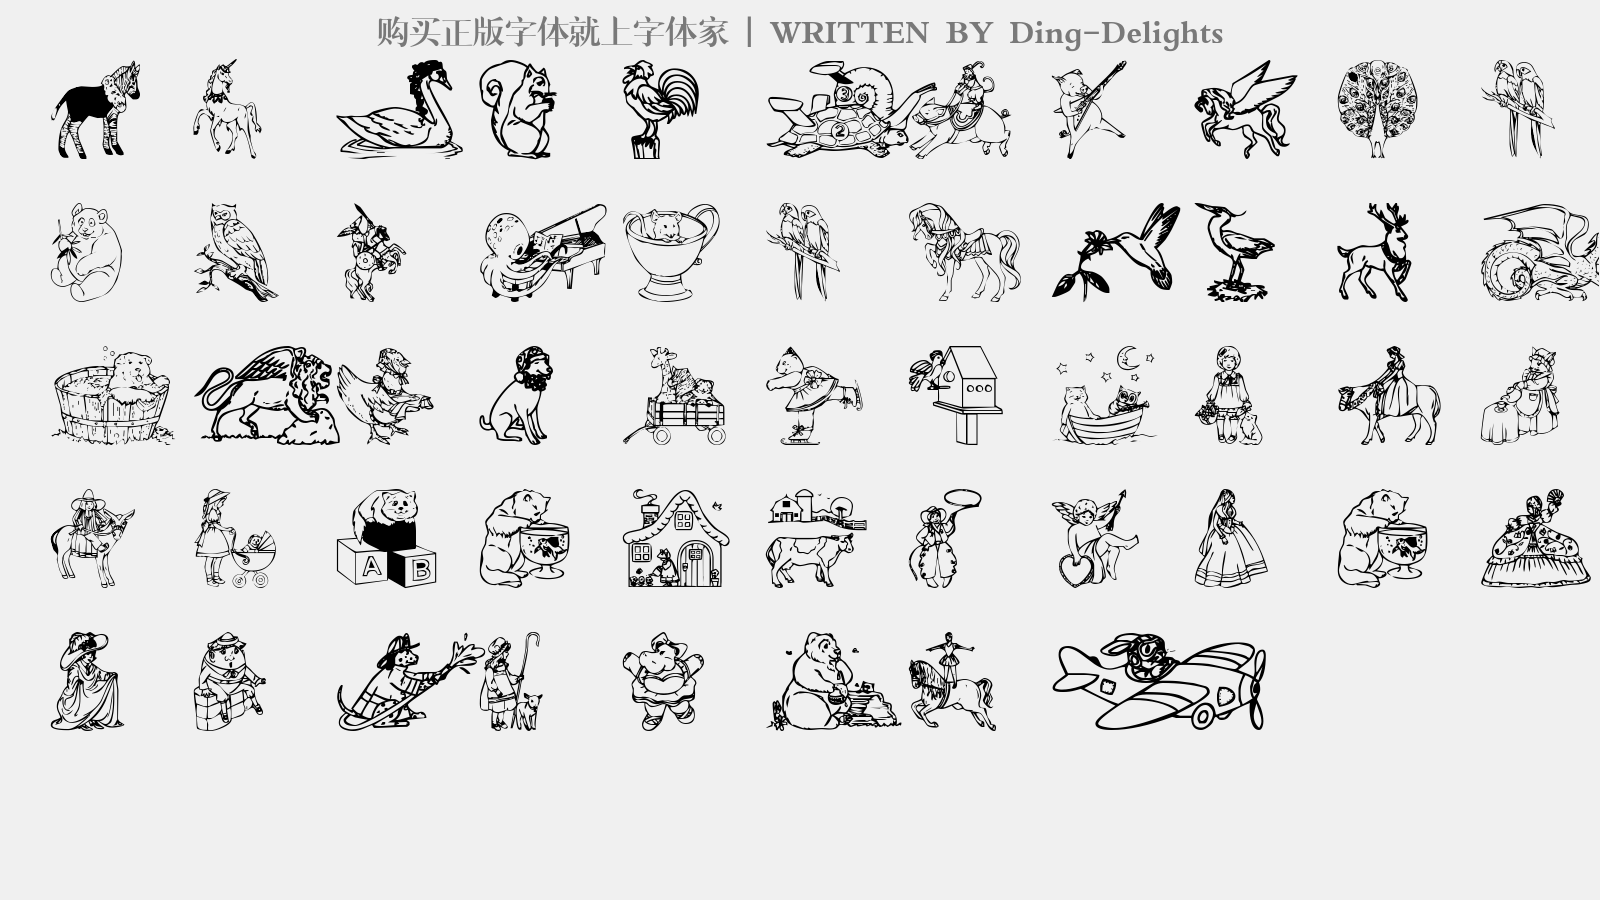 Ding-Delights - 大写字母/小写字母/数字